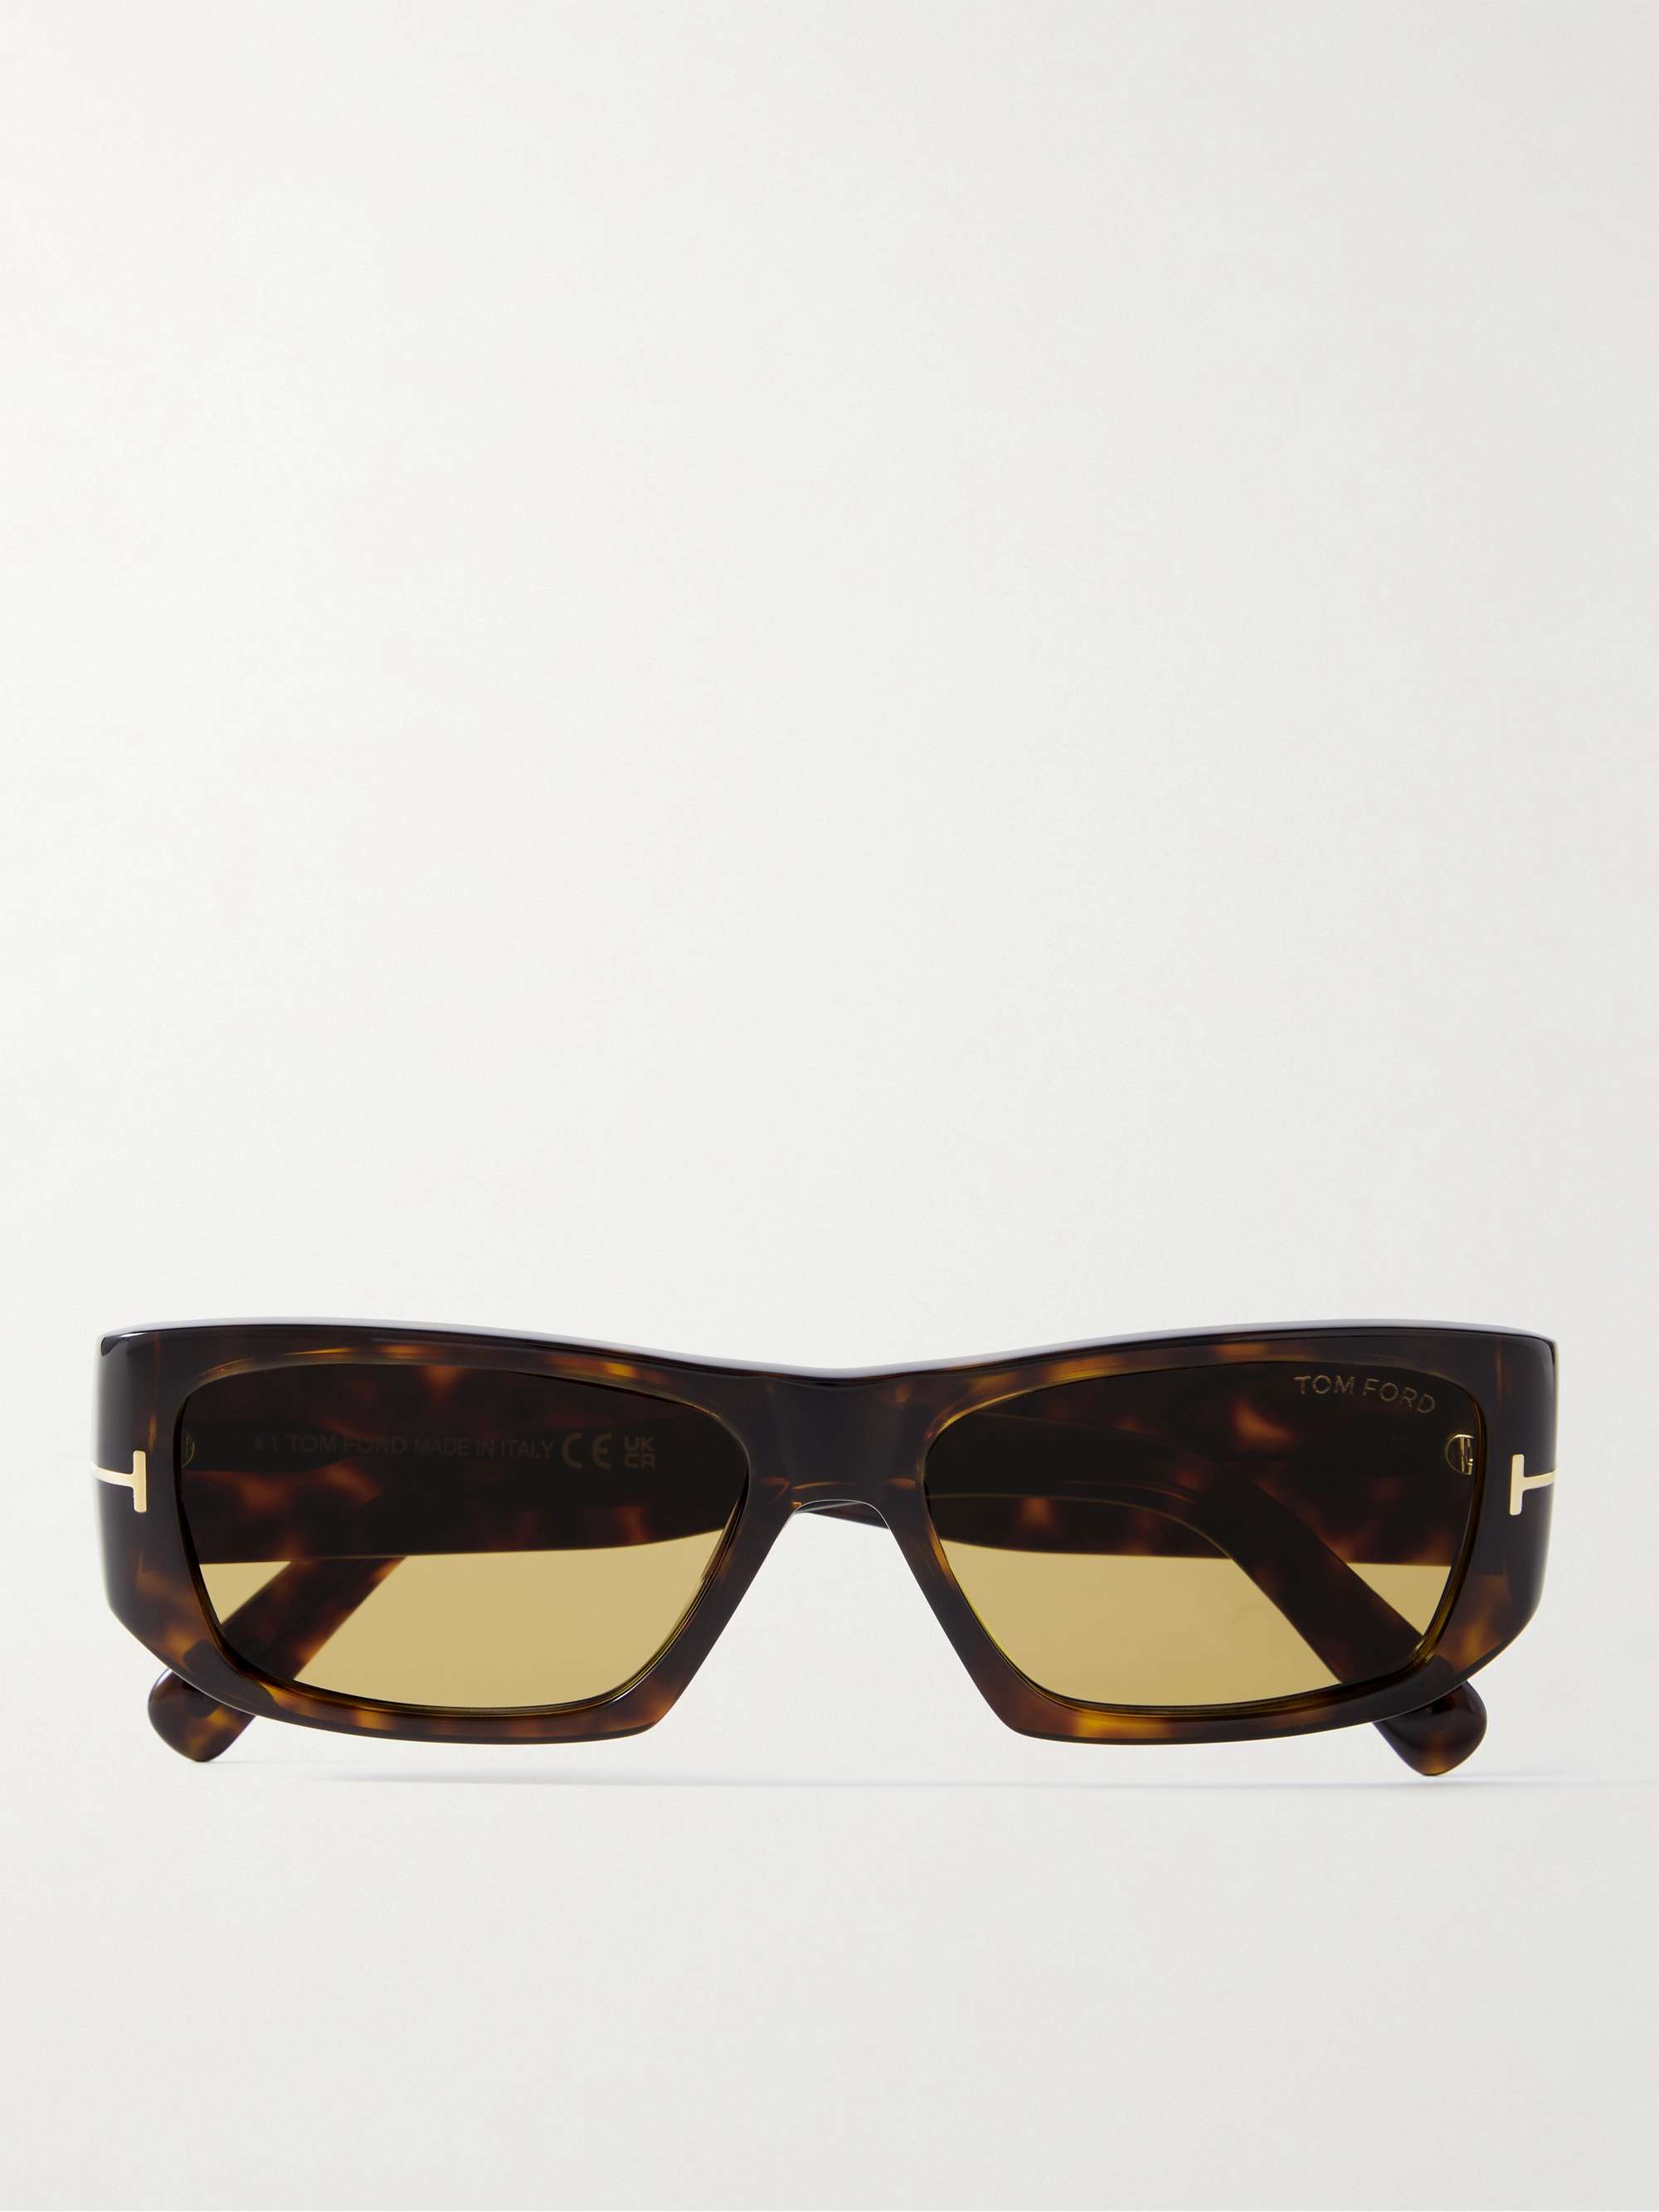 TOM FORD Rectanglar-Frame Tortoiseshell Acetate Sunglasses